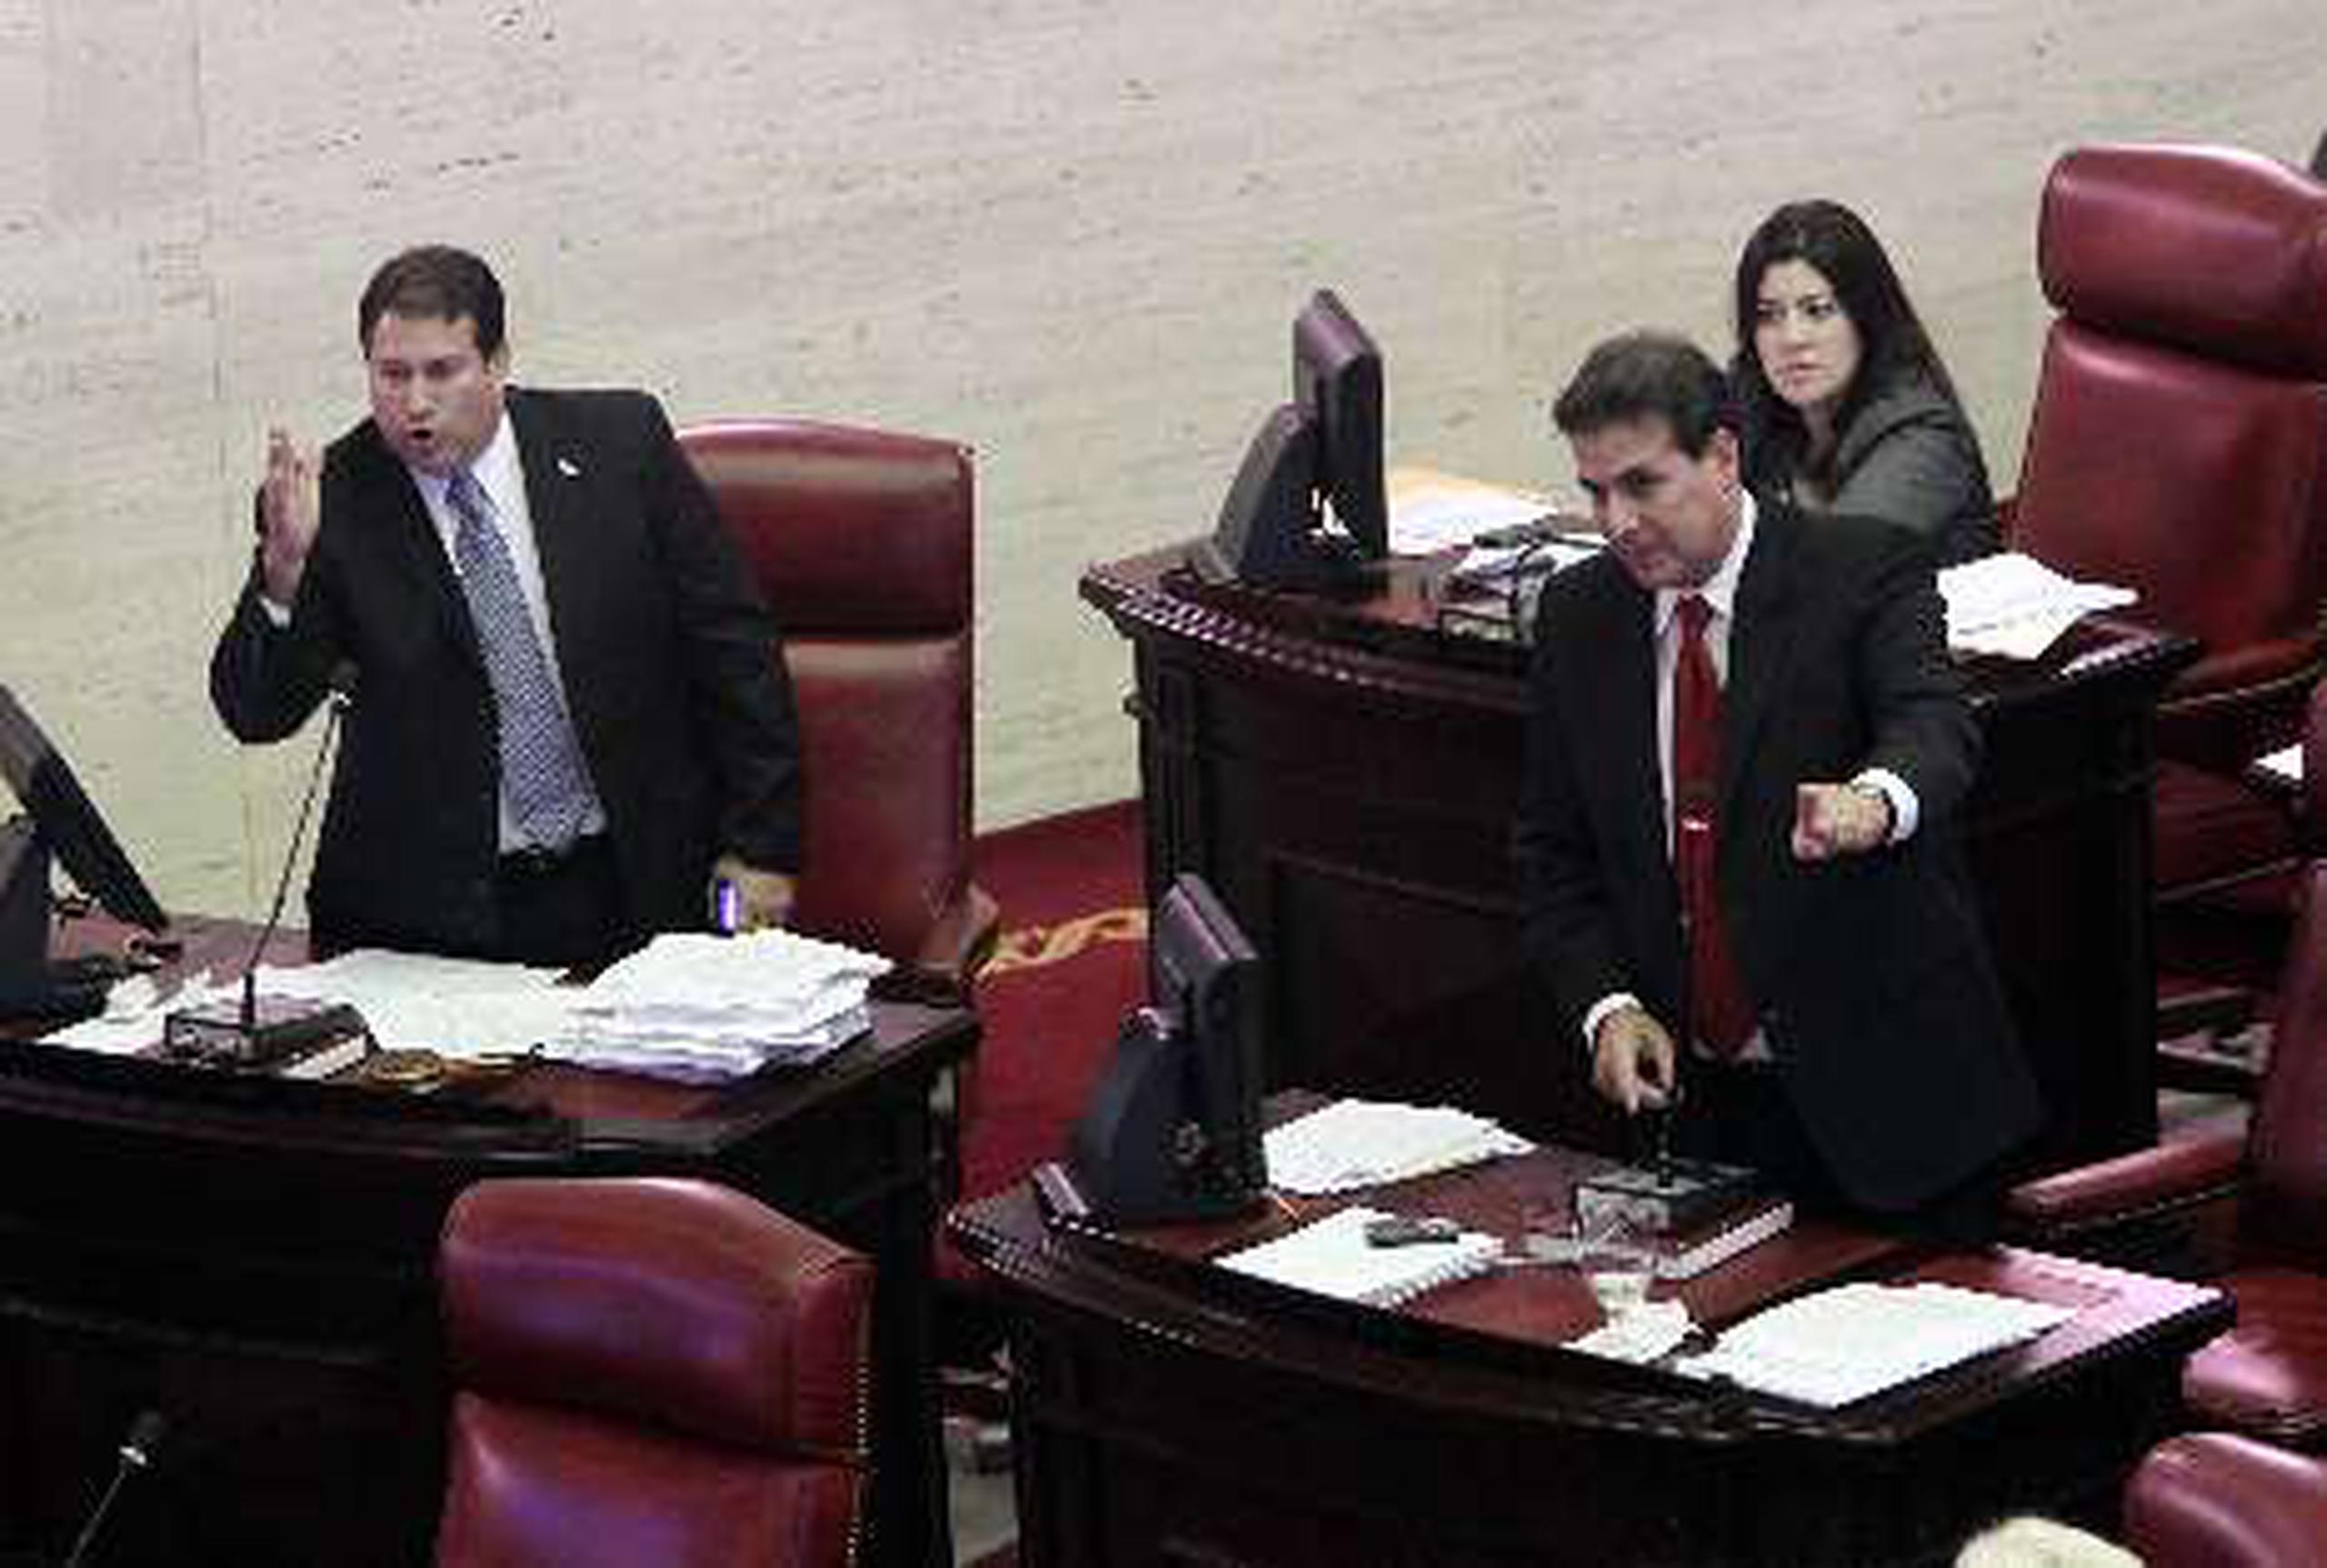  Los senadores Cirilo Tirado, Eduardo Bhatia y Sila Mari González  estuvieron en la sesión.   &nbsp;<font color="yellow">(Primera Hora / Andre Kang)</font>